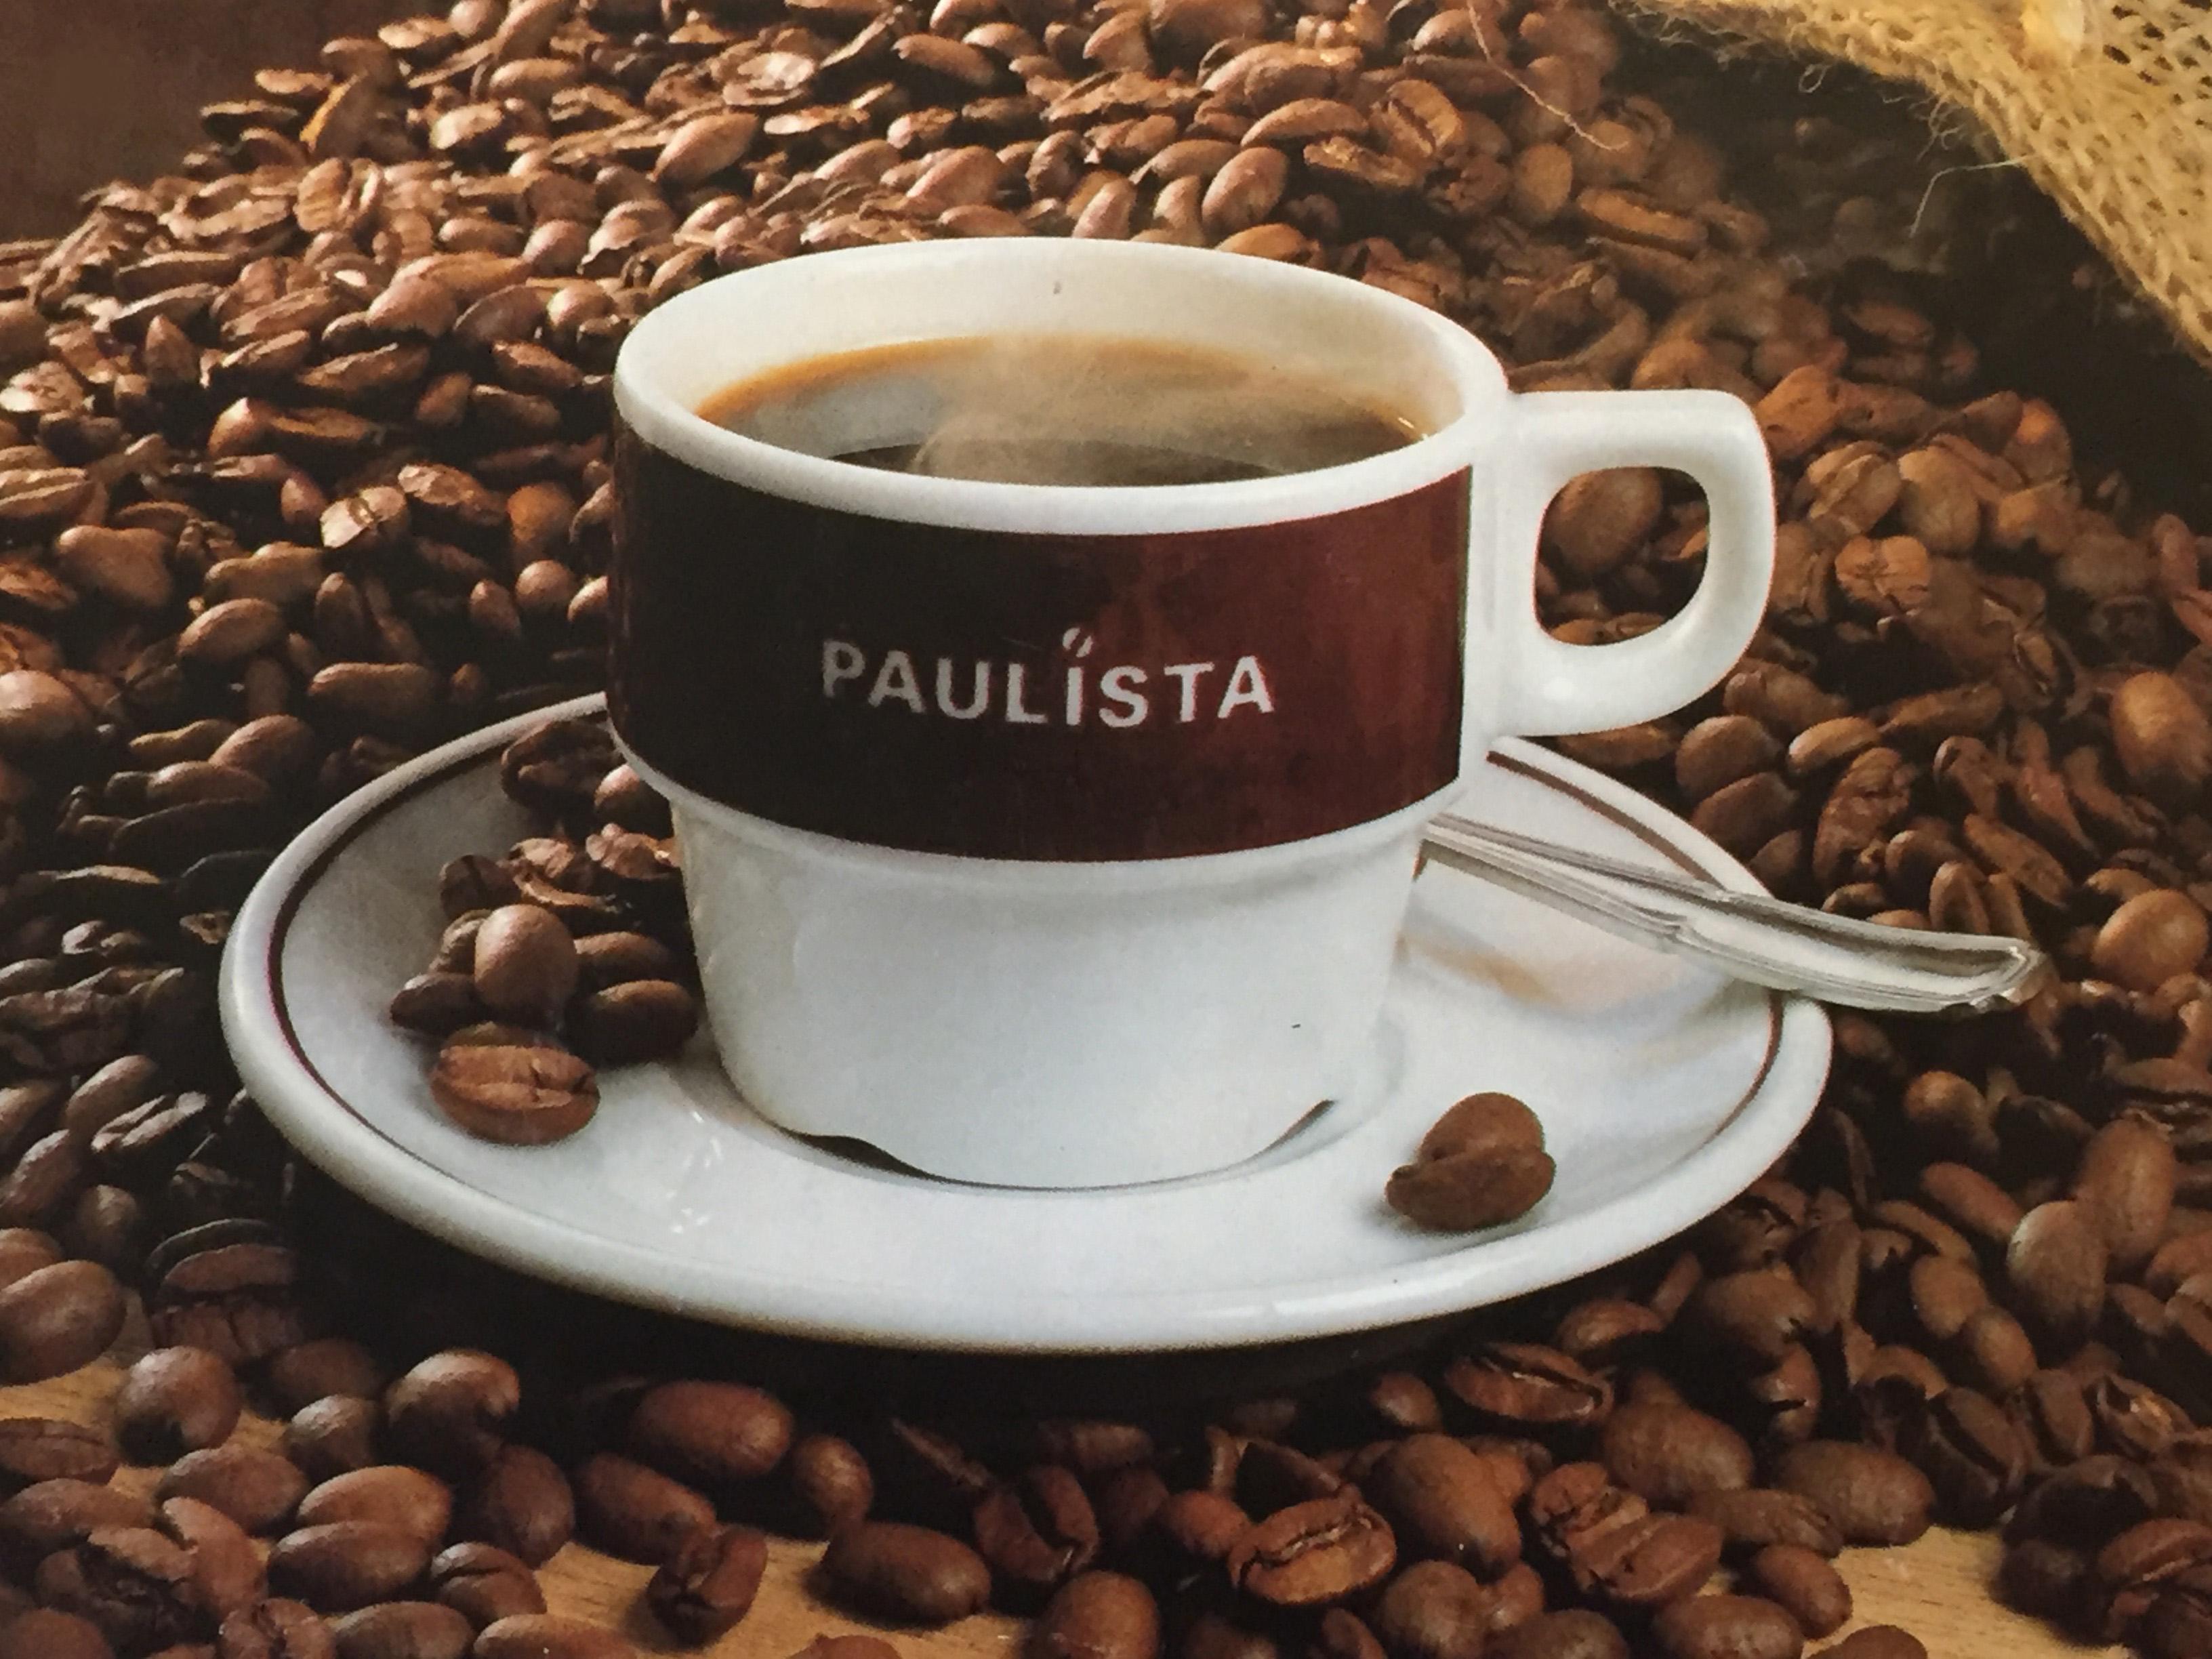 Café Liégeois rachète l'entreprise Paulista